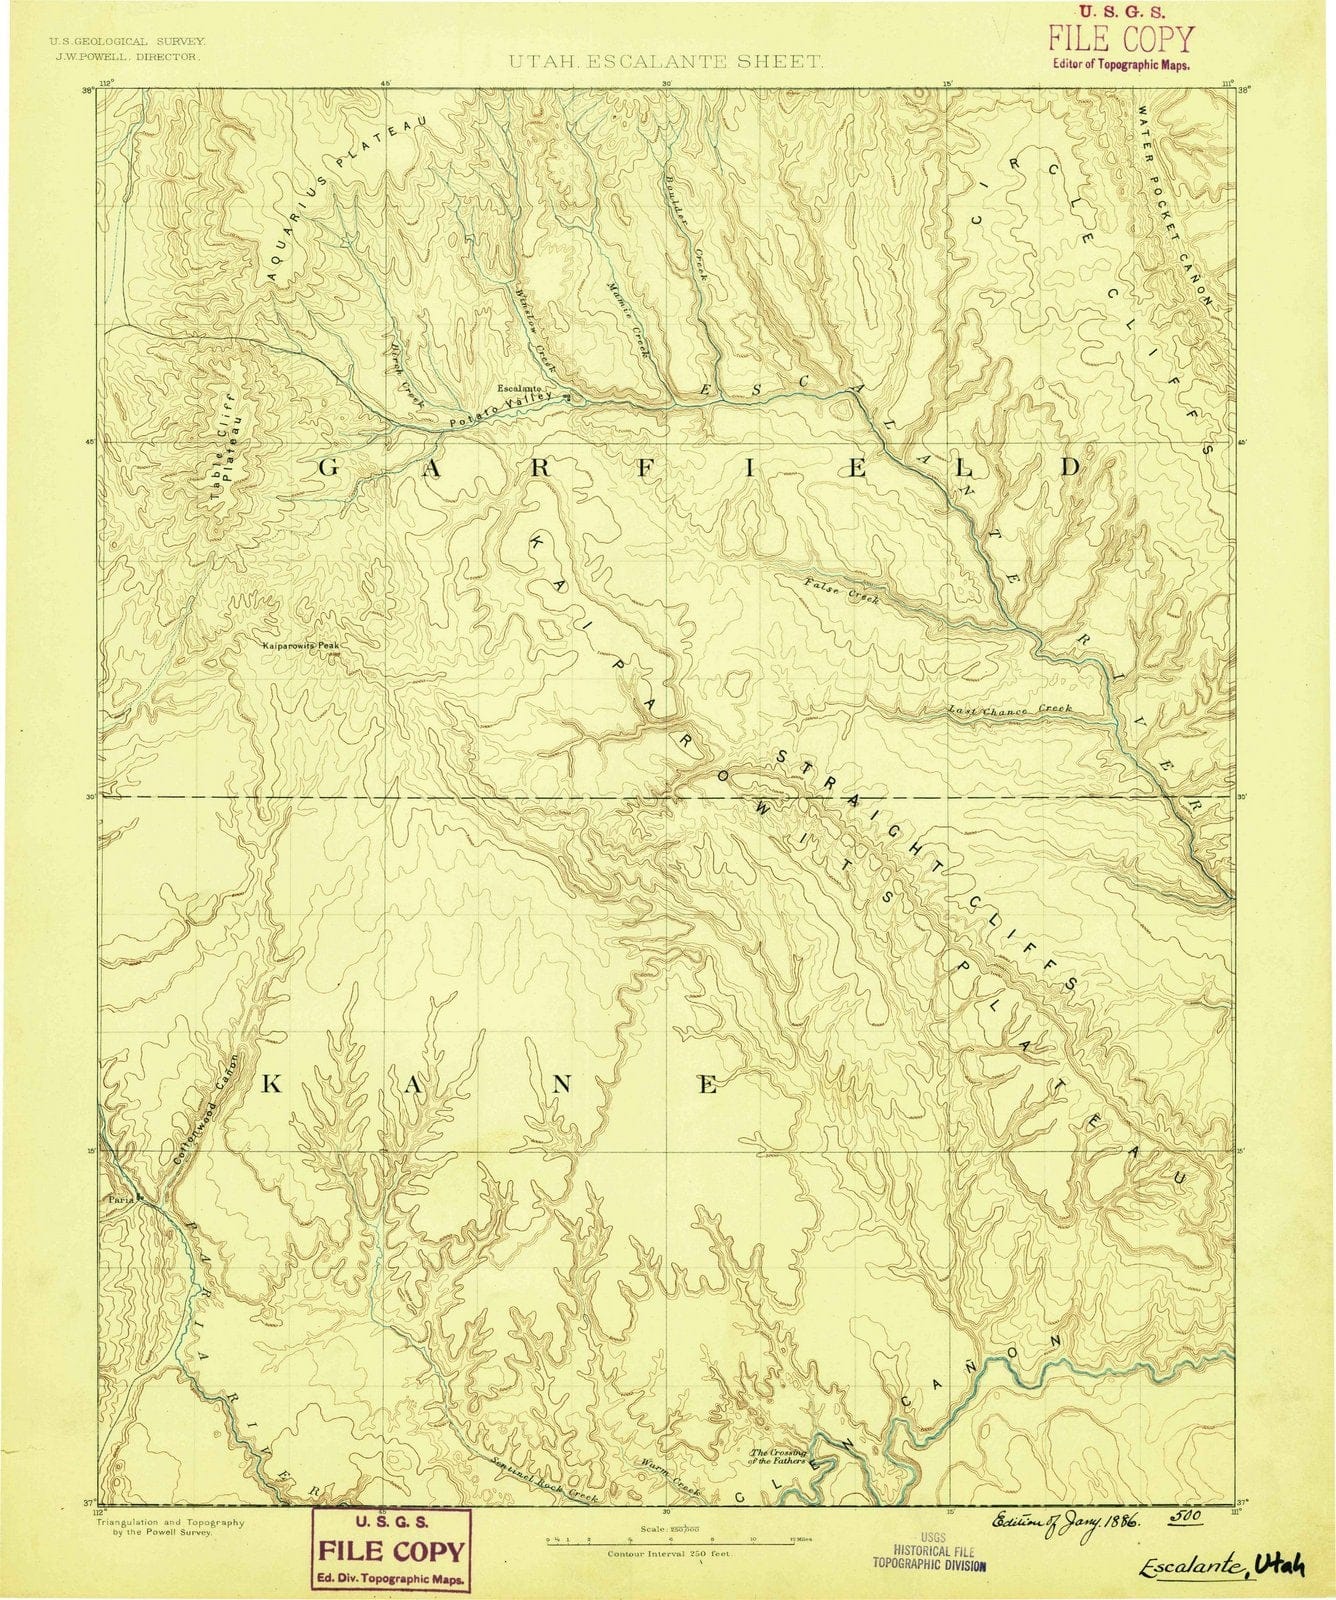 1886-Escalante-UT-Utah-USGS-Topographic-Map -HistoricPictoric